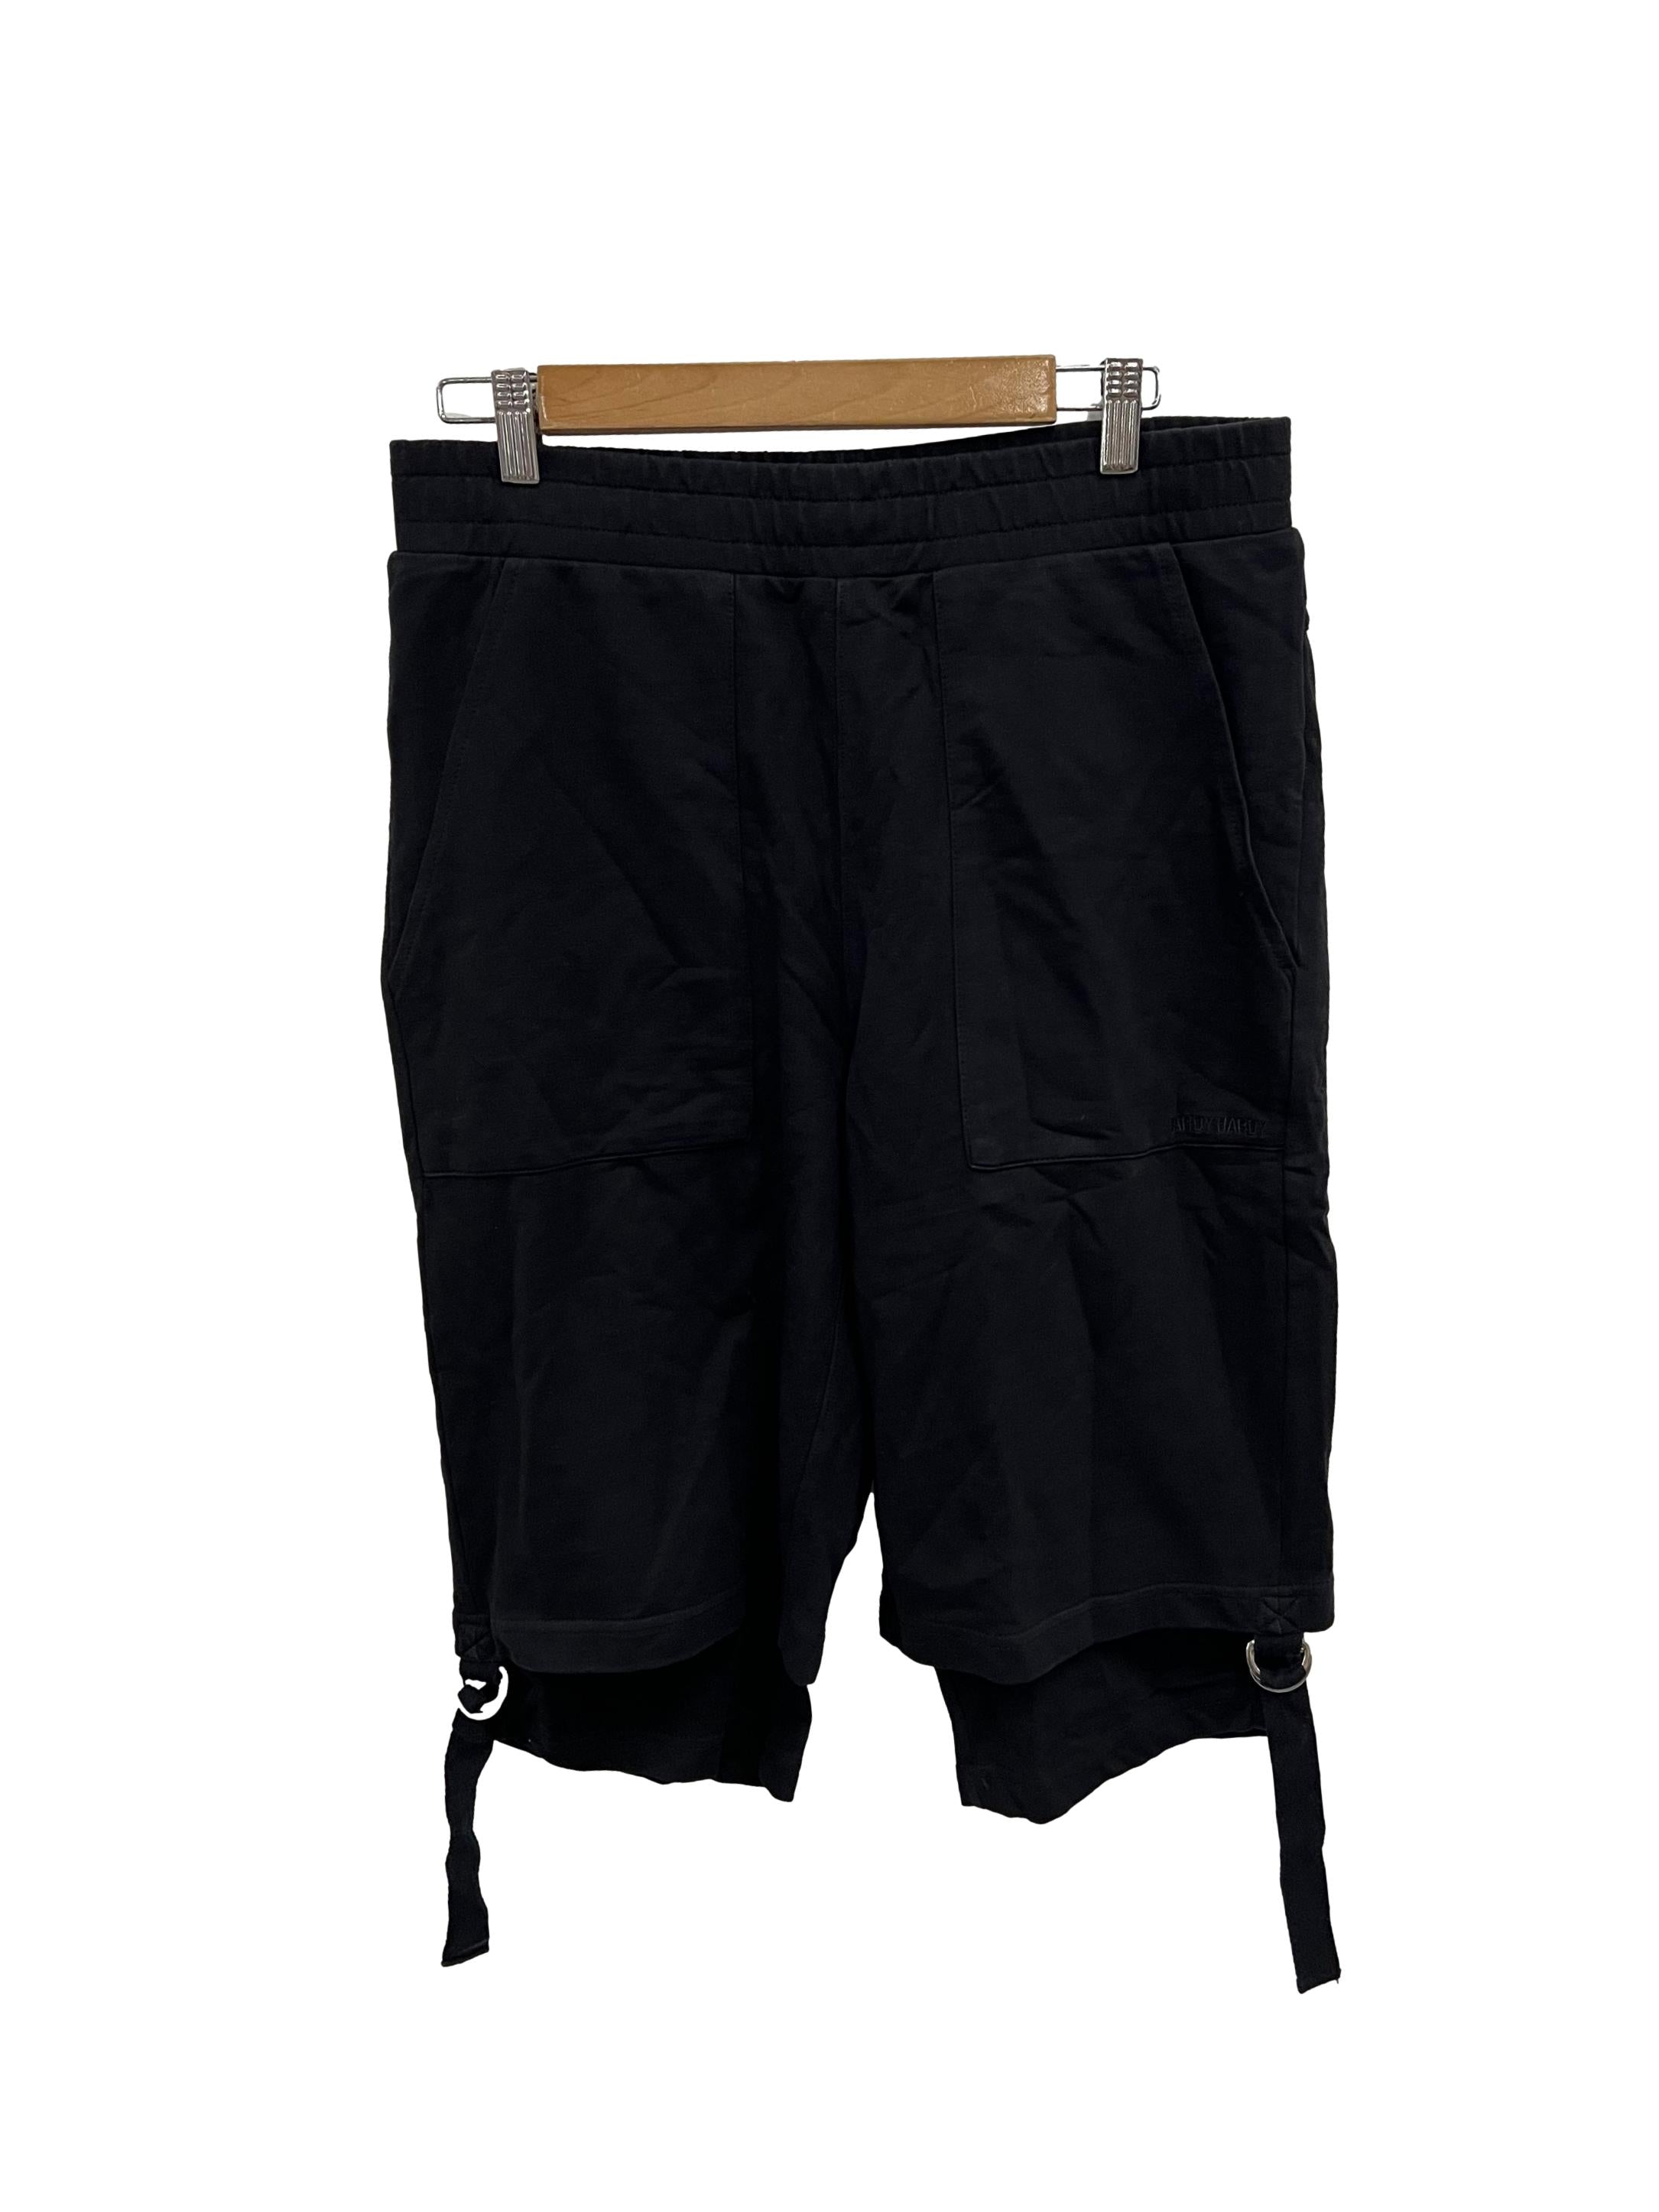 Black Quarter Shorts